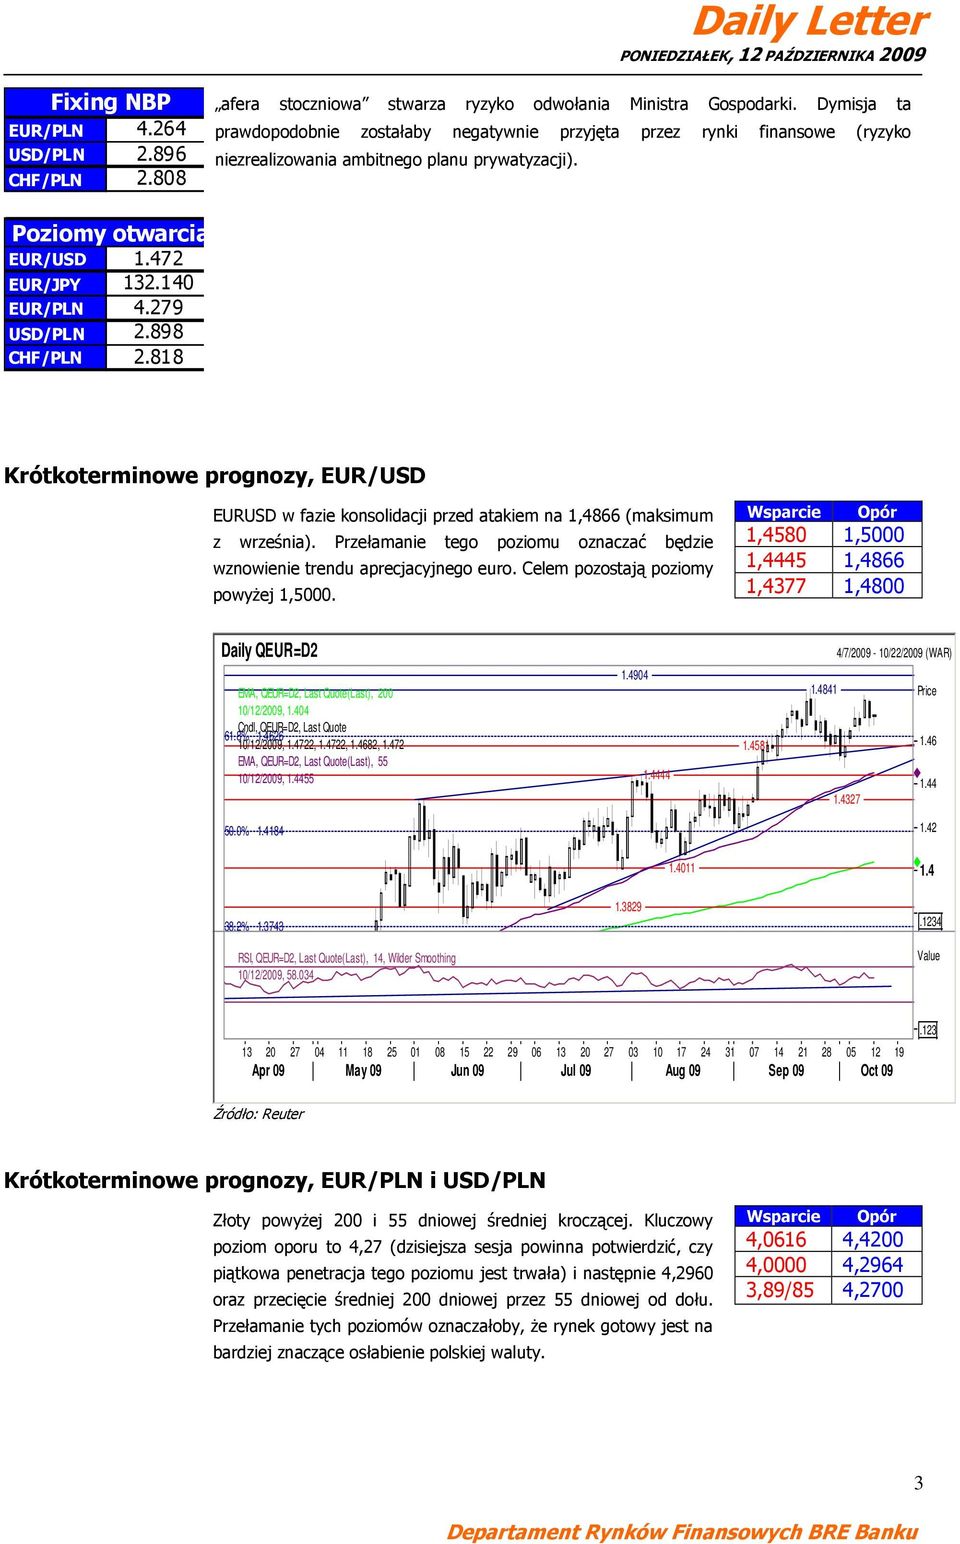 898 CHF/PLN 2.818 Krótkoterminowe prognozy, EUR/USD EURUSD w fazie konsolidacji przed atakiem na 1,866 (maksimum z września).